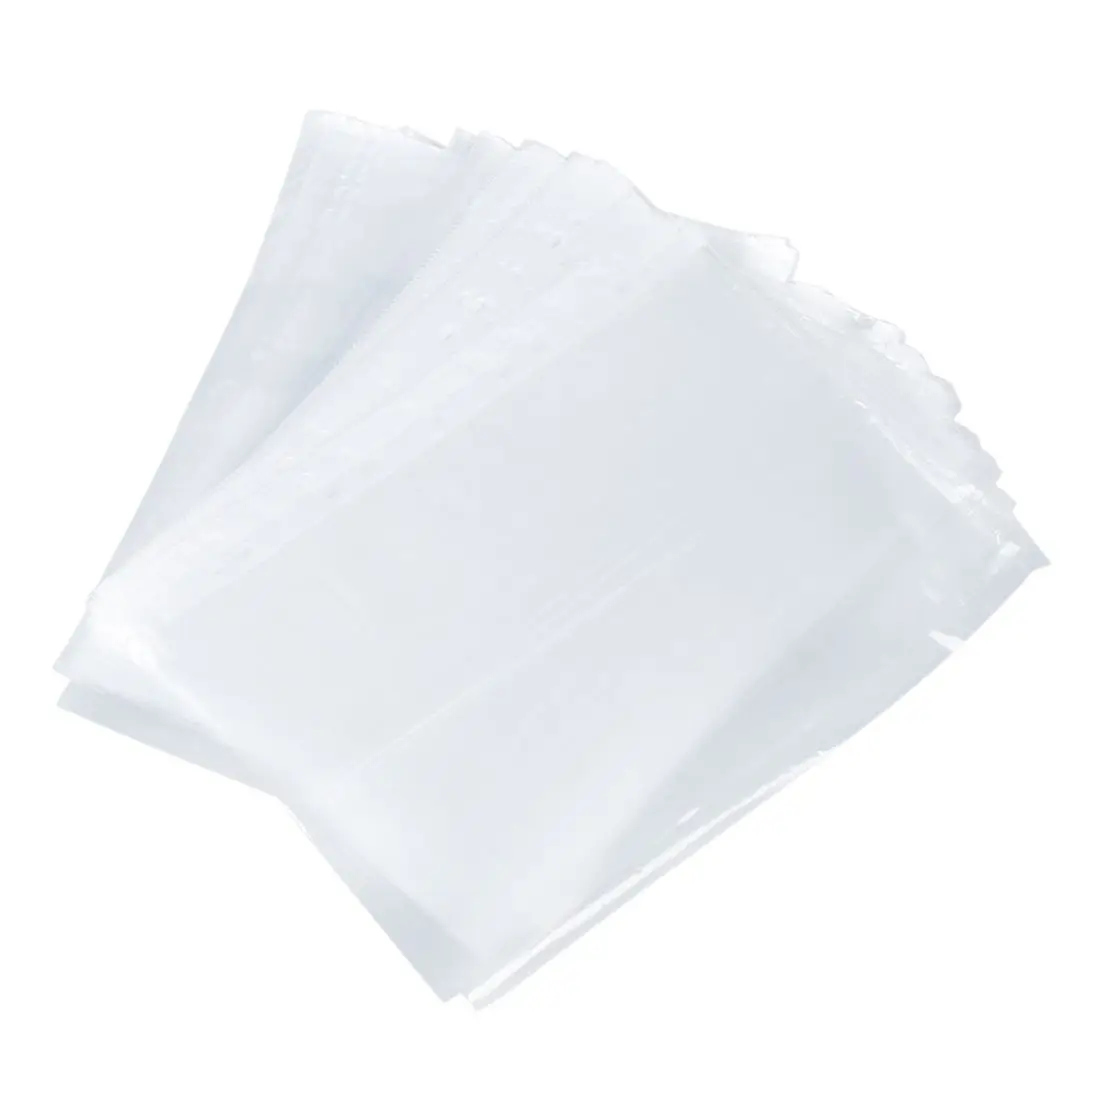 PPYY новый-офисные и школьные A4 документы документ протектор листа чистый белый 100 шт